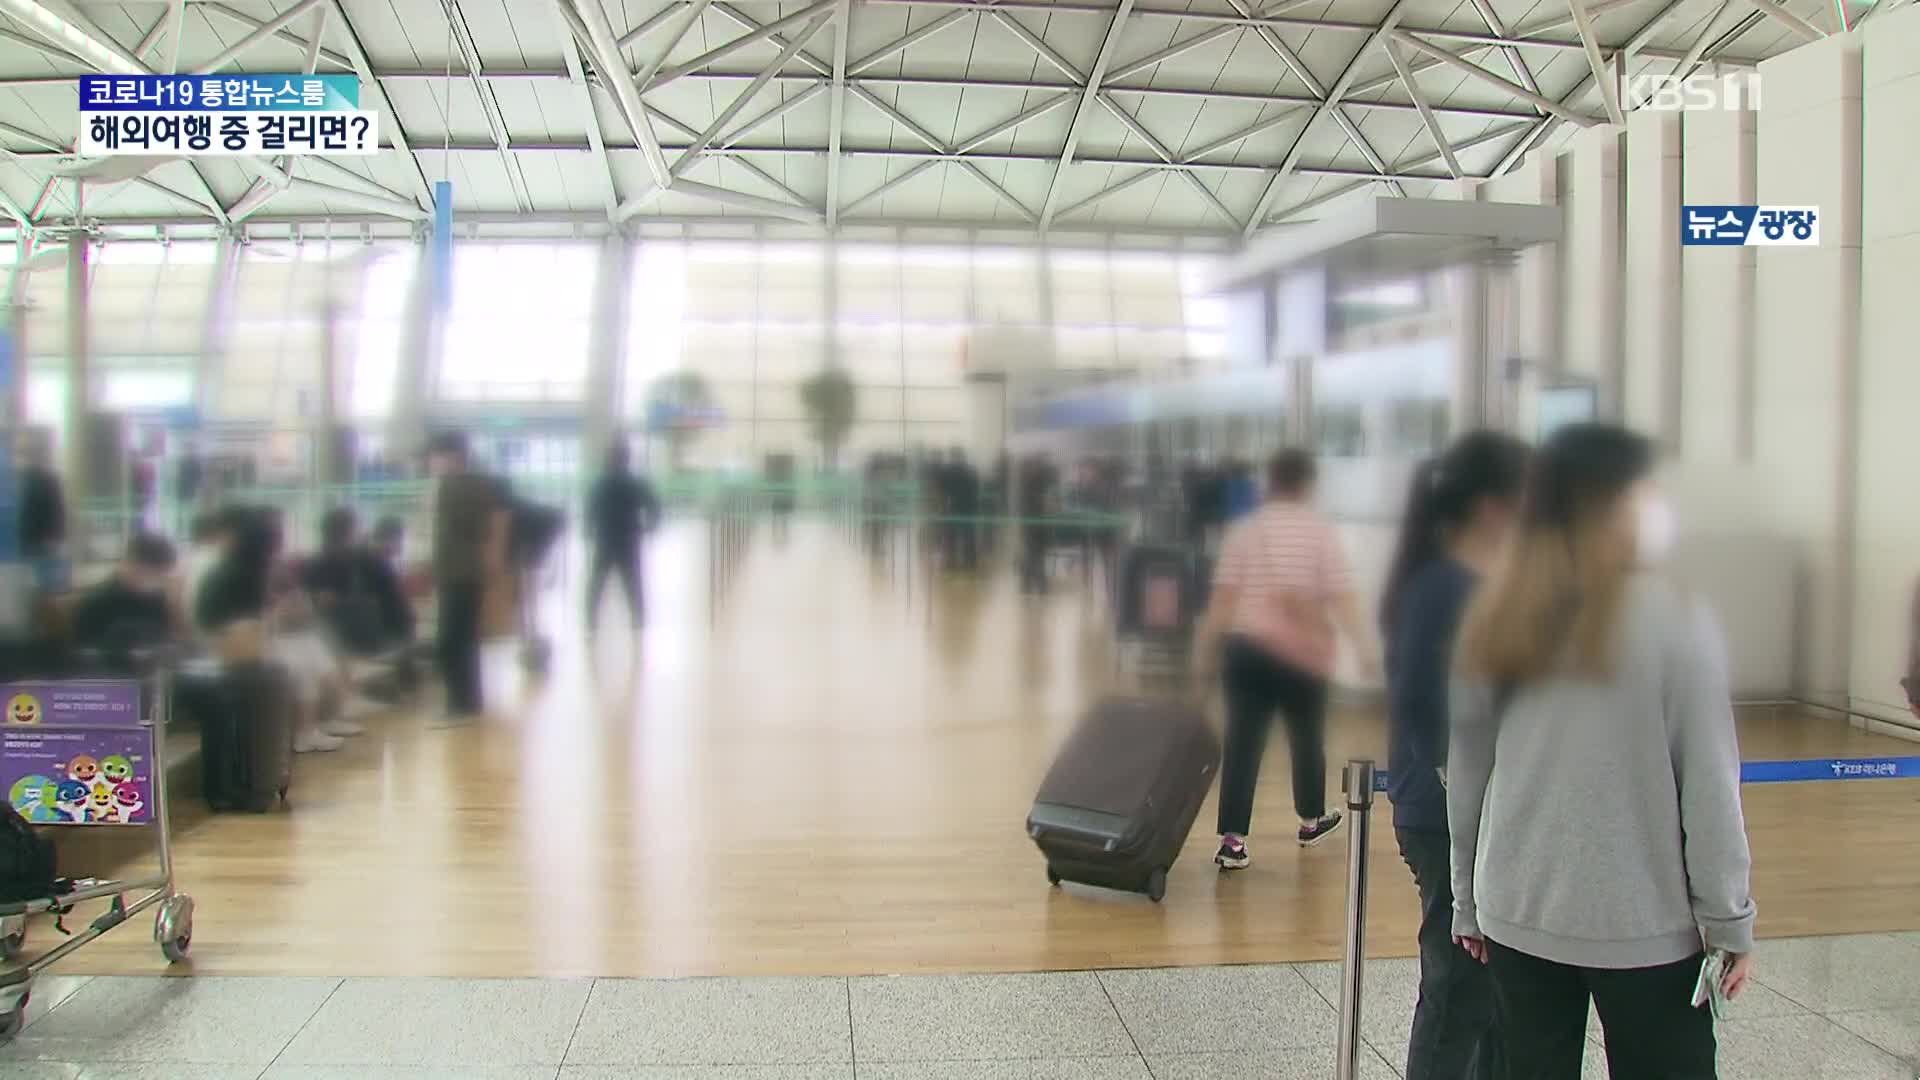 공항 이용객 3배 급증…해외 여행갔다 코로나 걸리면?